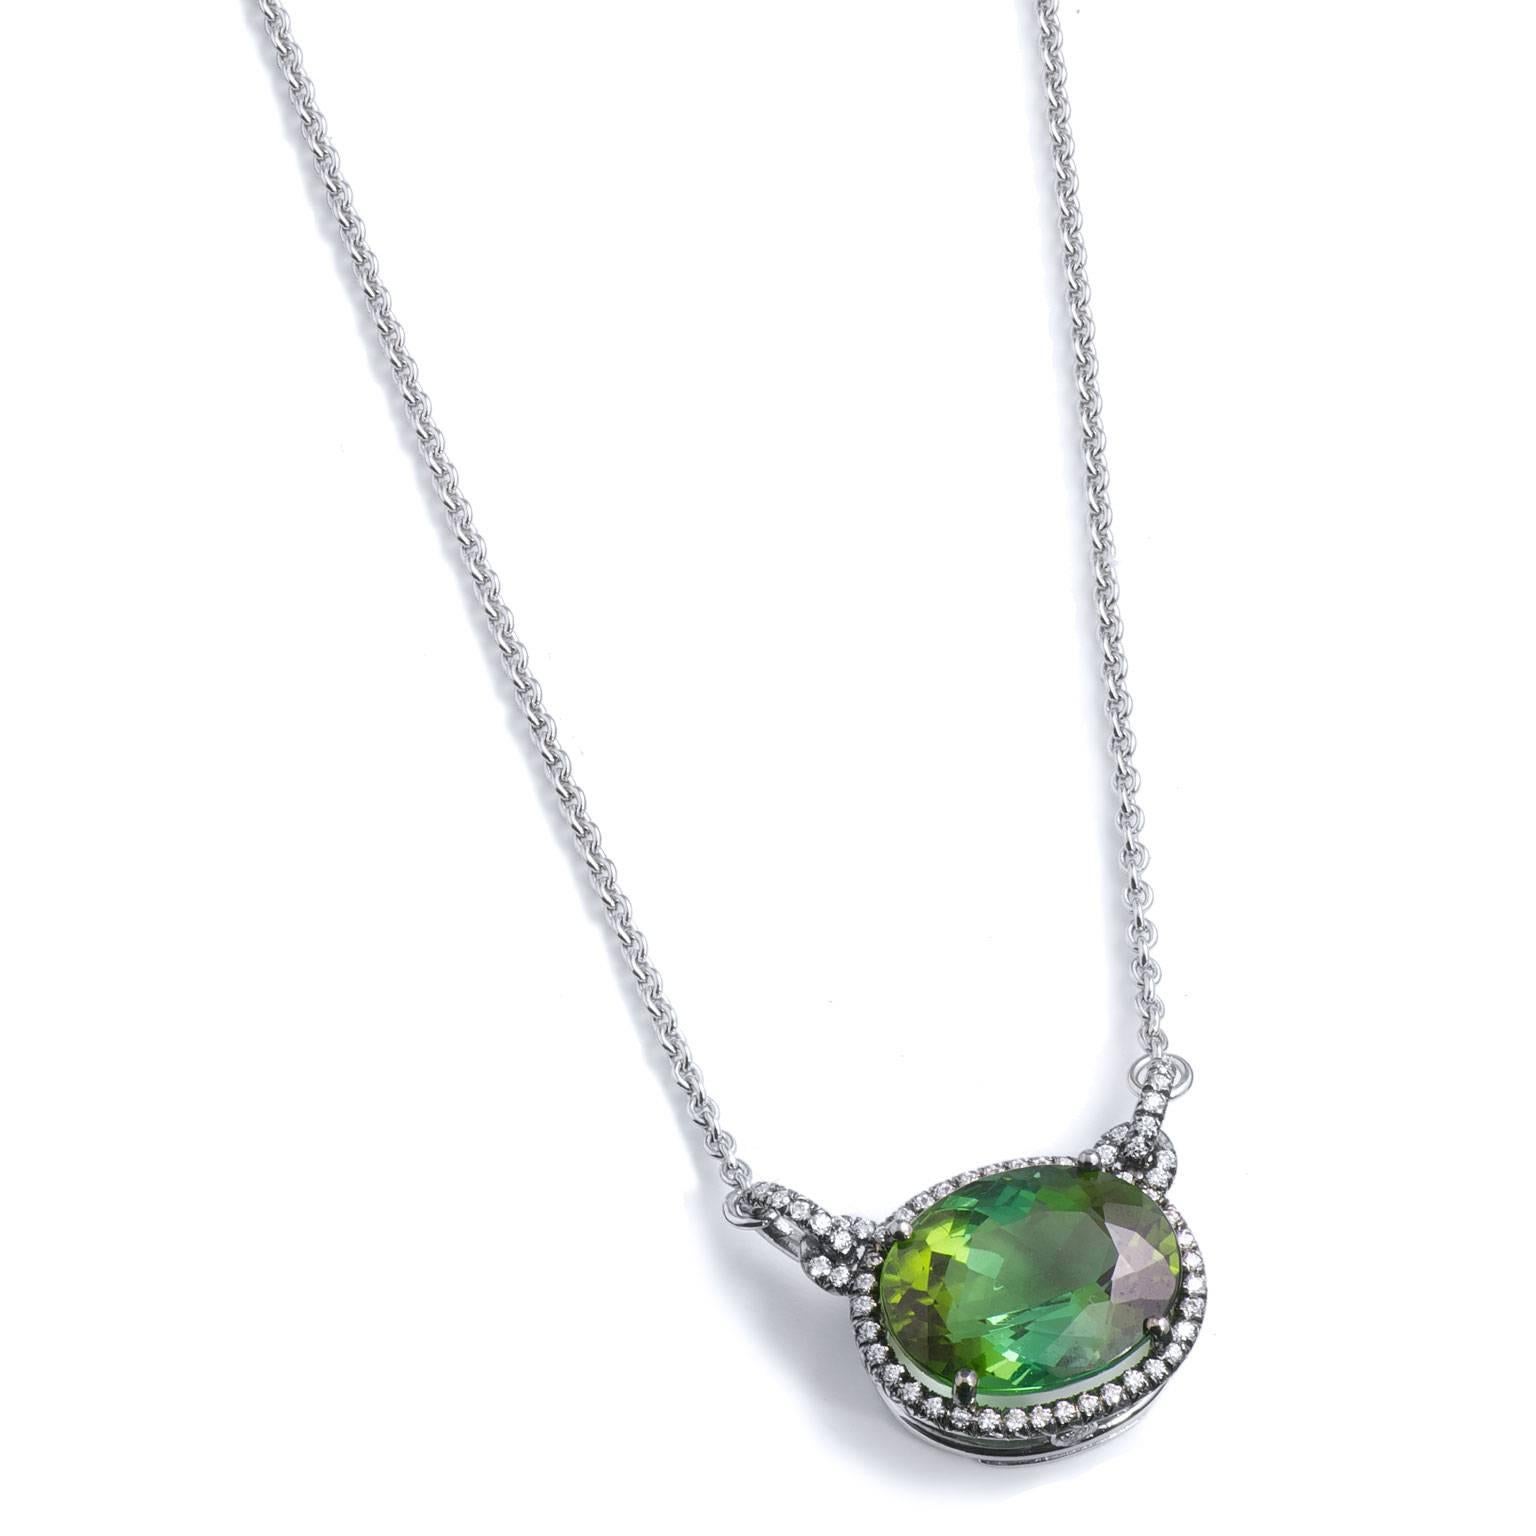 6.collier avec pendentif en tourmaline verte et diamant de 43 carats en or 18 carats

Il s'agit d'une création artisanale, unique en son genre, de H&H Jewels.  

Elle présente une tourmaline de 6,43 carats entourée de 0,25 carats de diamants sertis